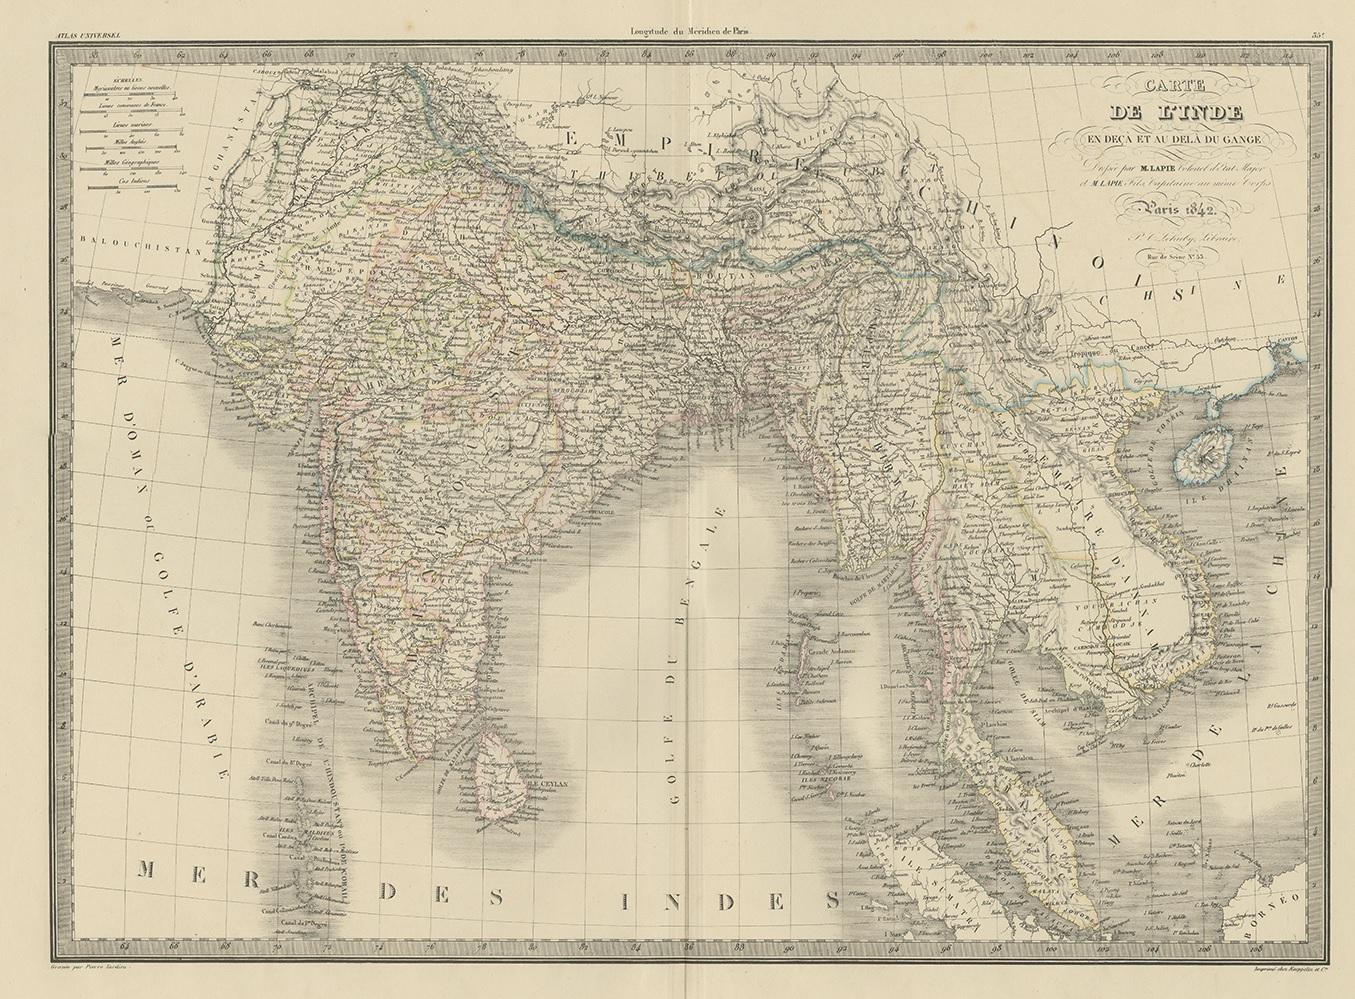 Antique map titled 'Carte de l'Inde en deca et au dela du Gange'. Map of India and Ceylon (Sri Lanka). This map originates from 'Atlas universel de géographie ancienne et moderne (..)' by Pierre M. Lapie and Alexandre E. Lapie. Pierre M. Lapie was a